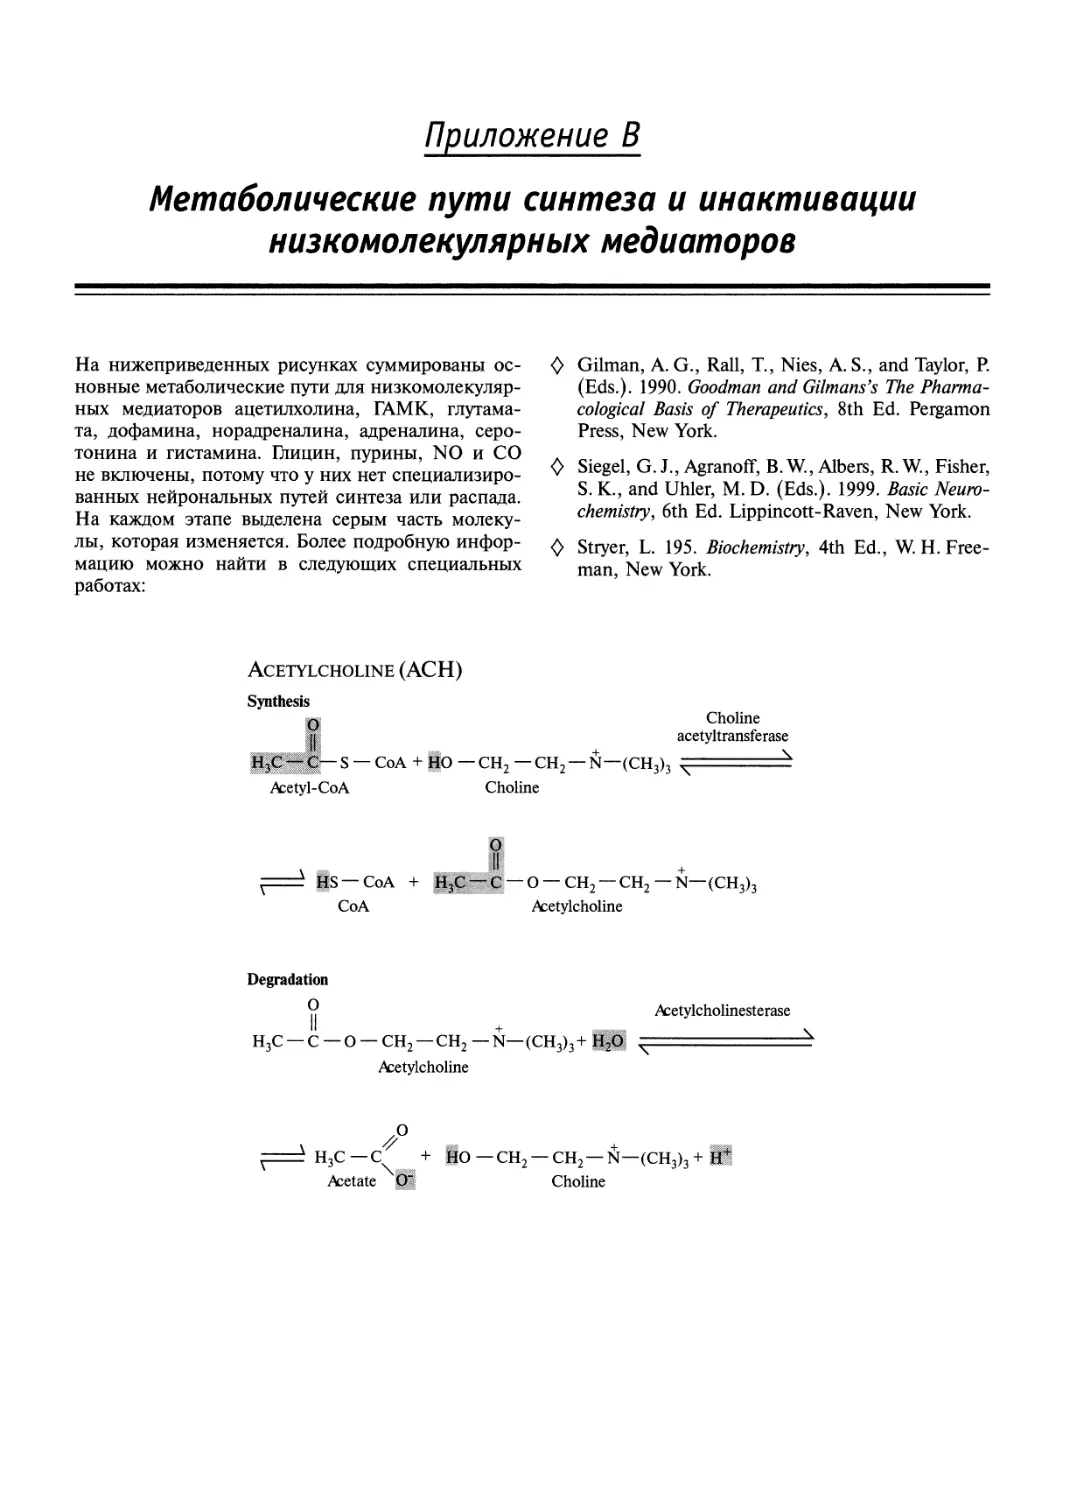 Приложение В. Метаболические пути синтеза и инактивации низкомолекулярных медиаторов